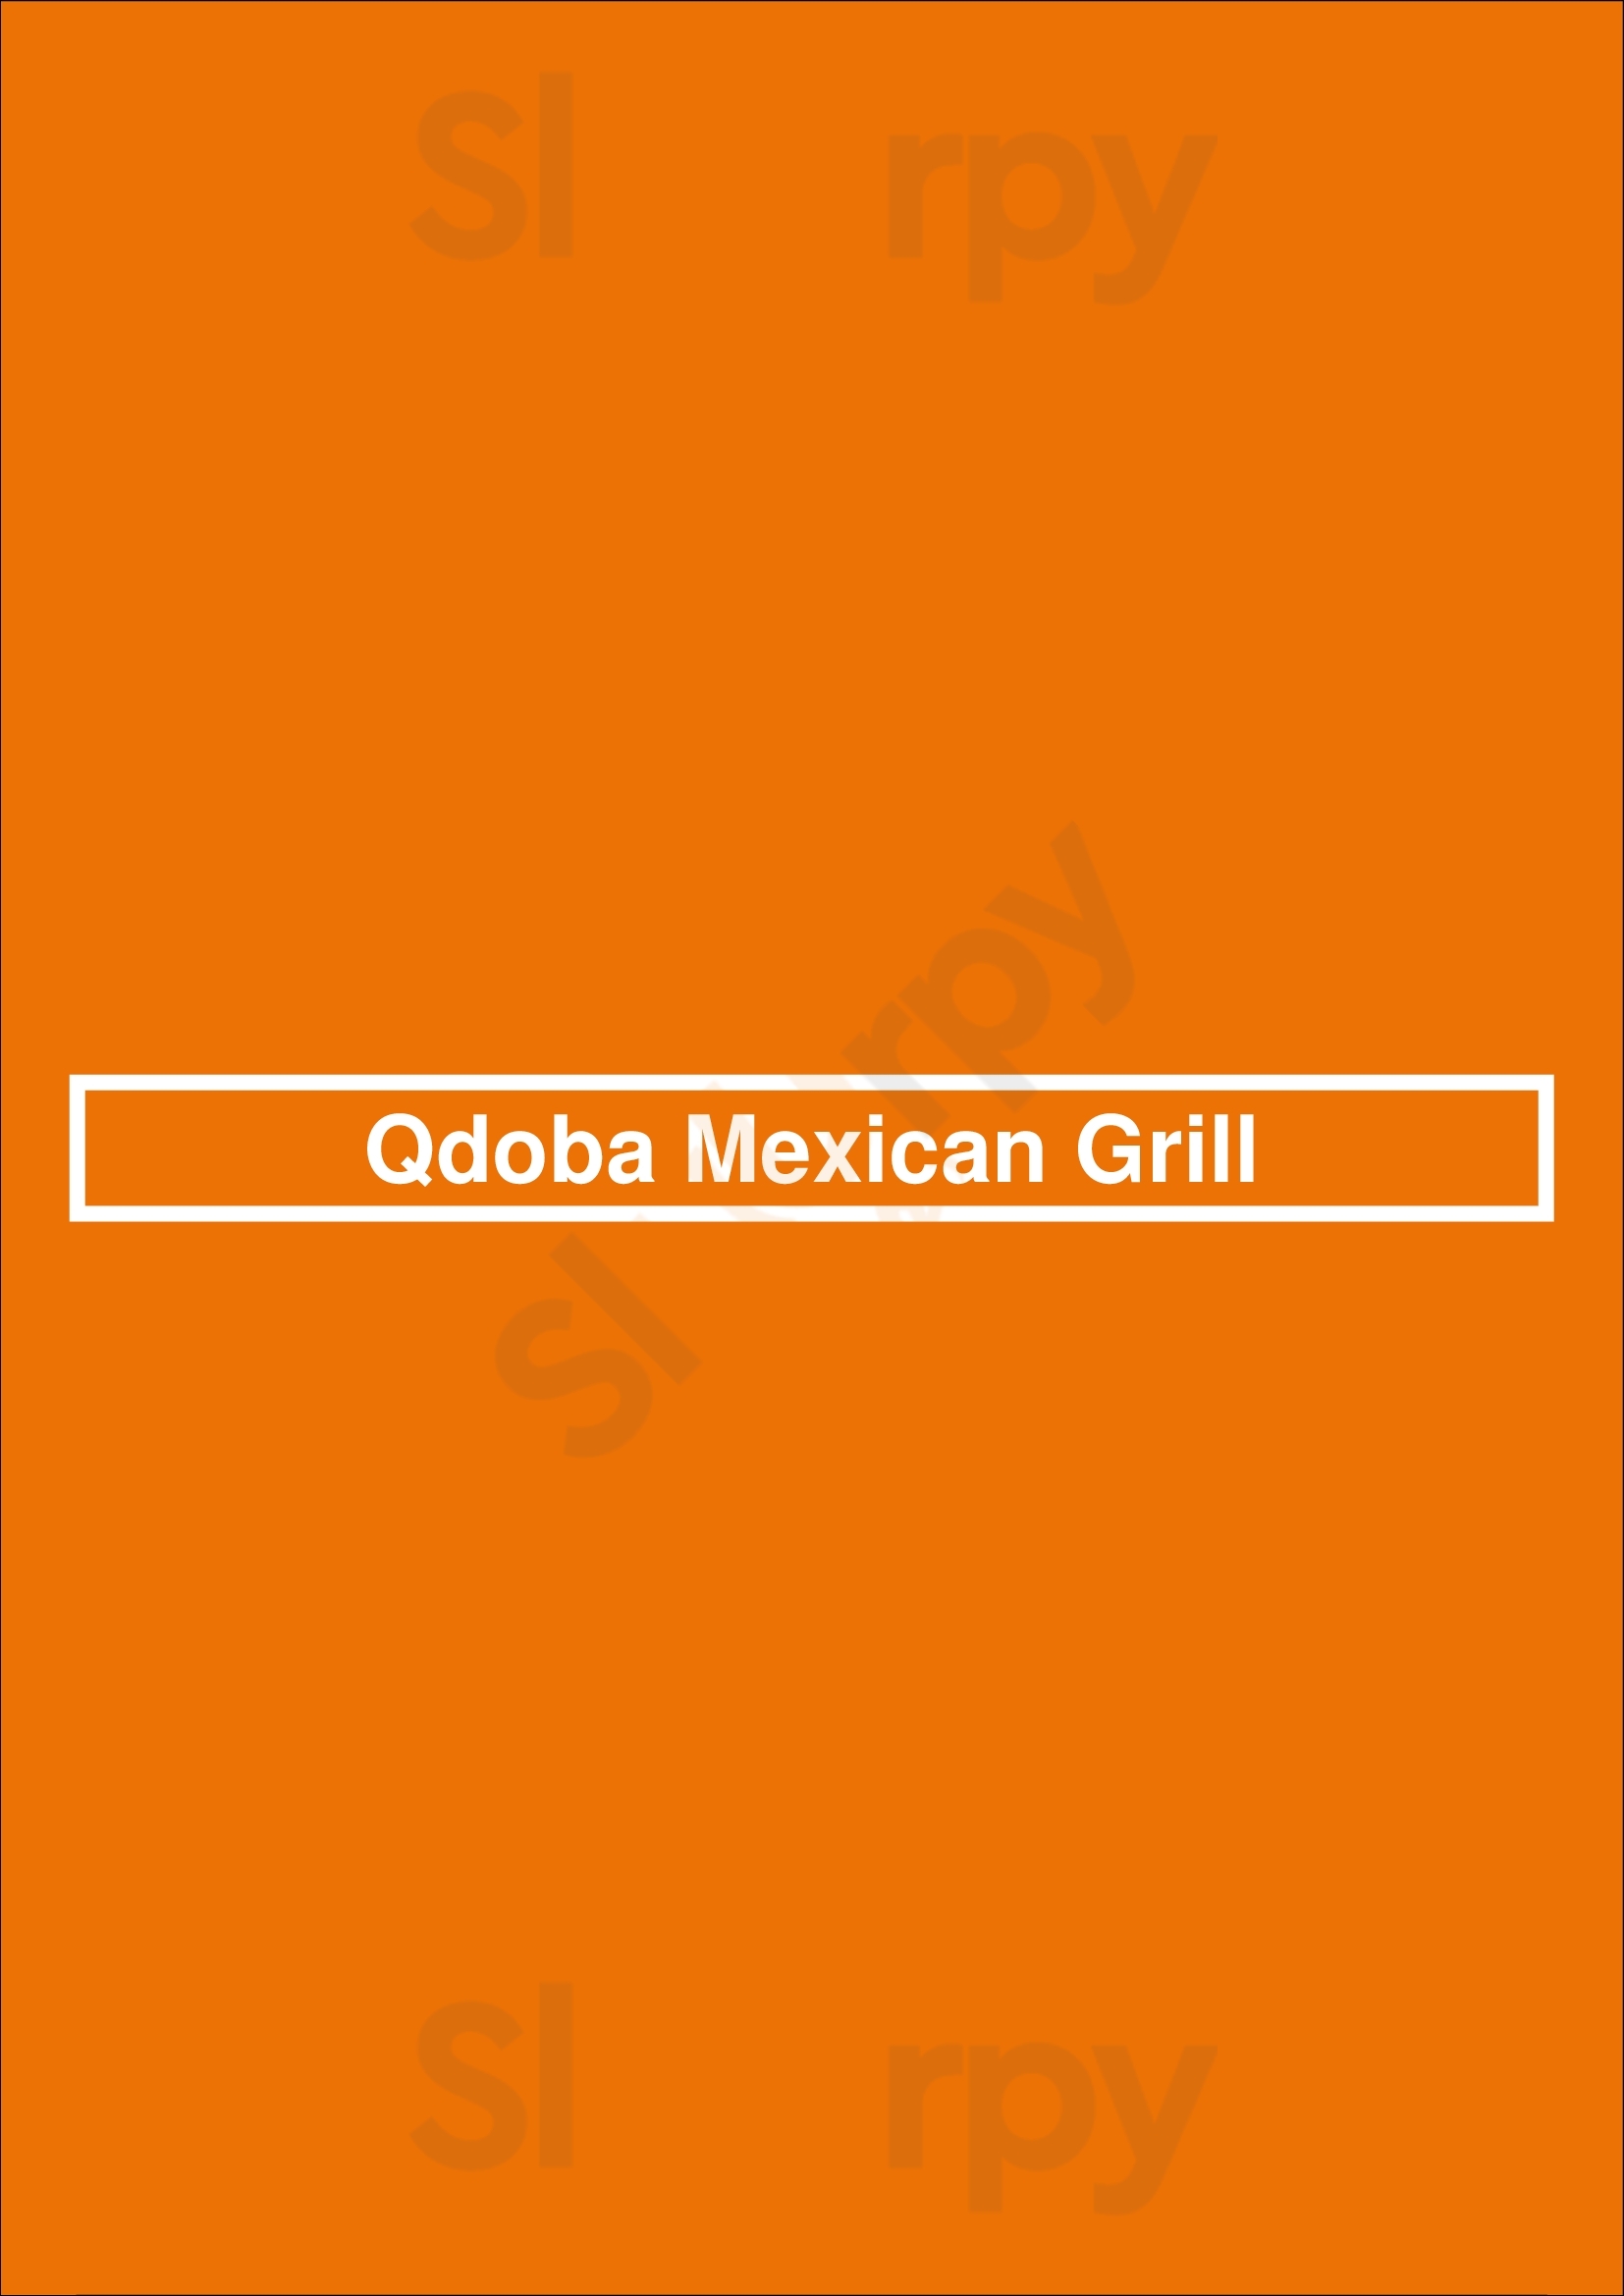 Qdoba Mexican Grill Colorado Springs Menu - 1